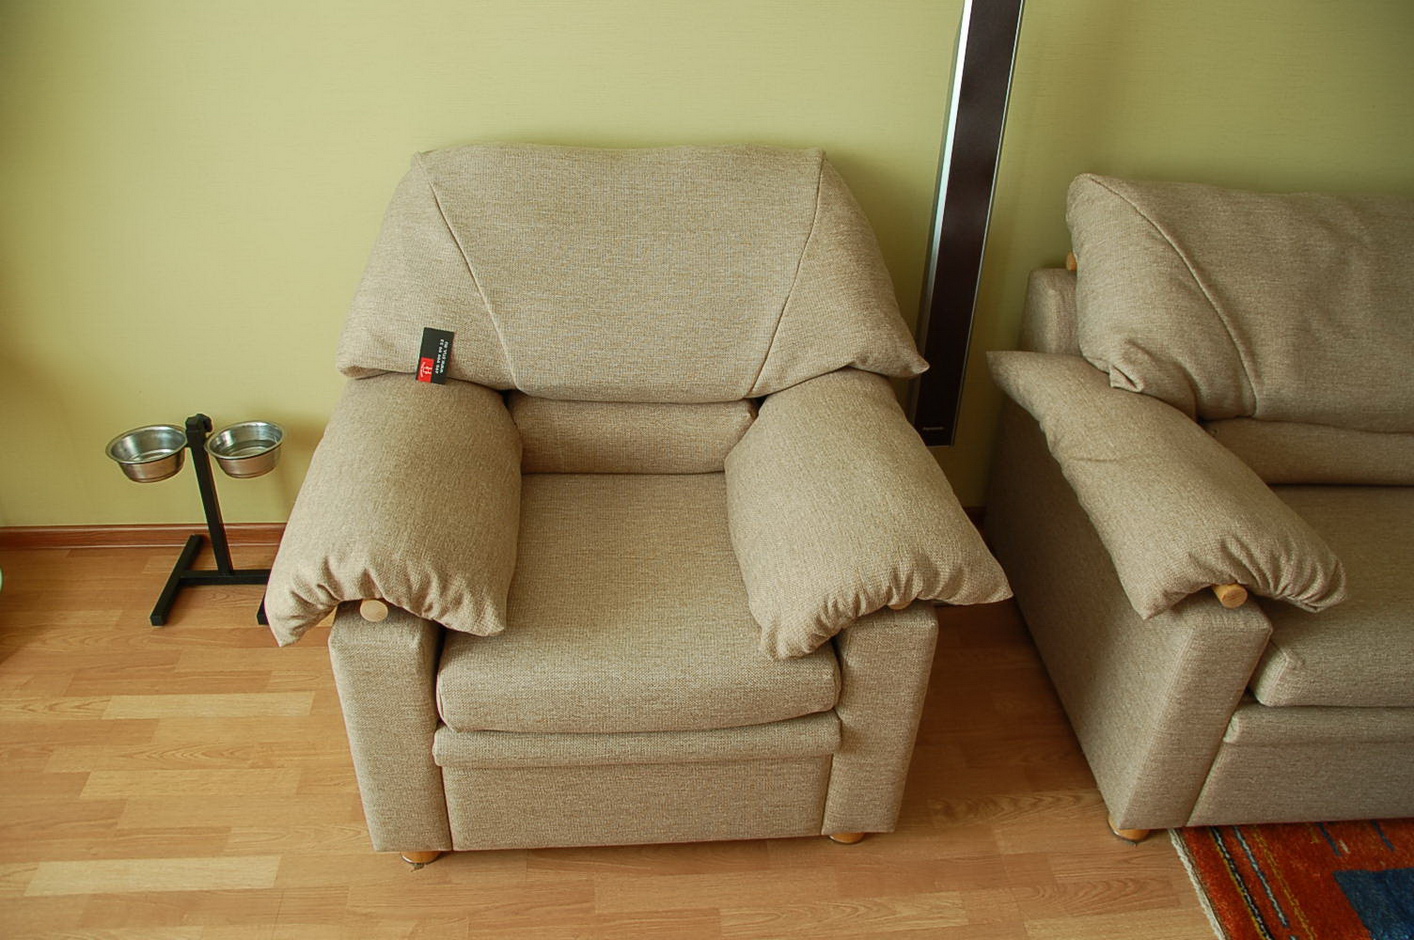 Апрелевка - ремонт стульев, материал натуральная кожа